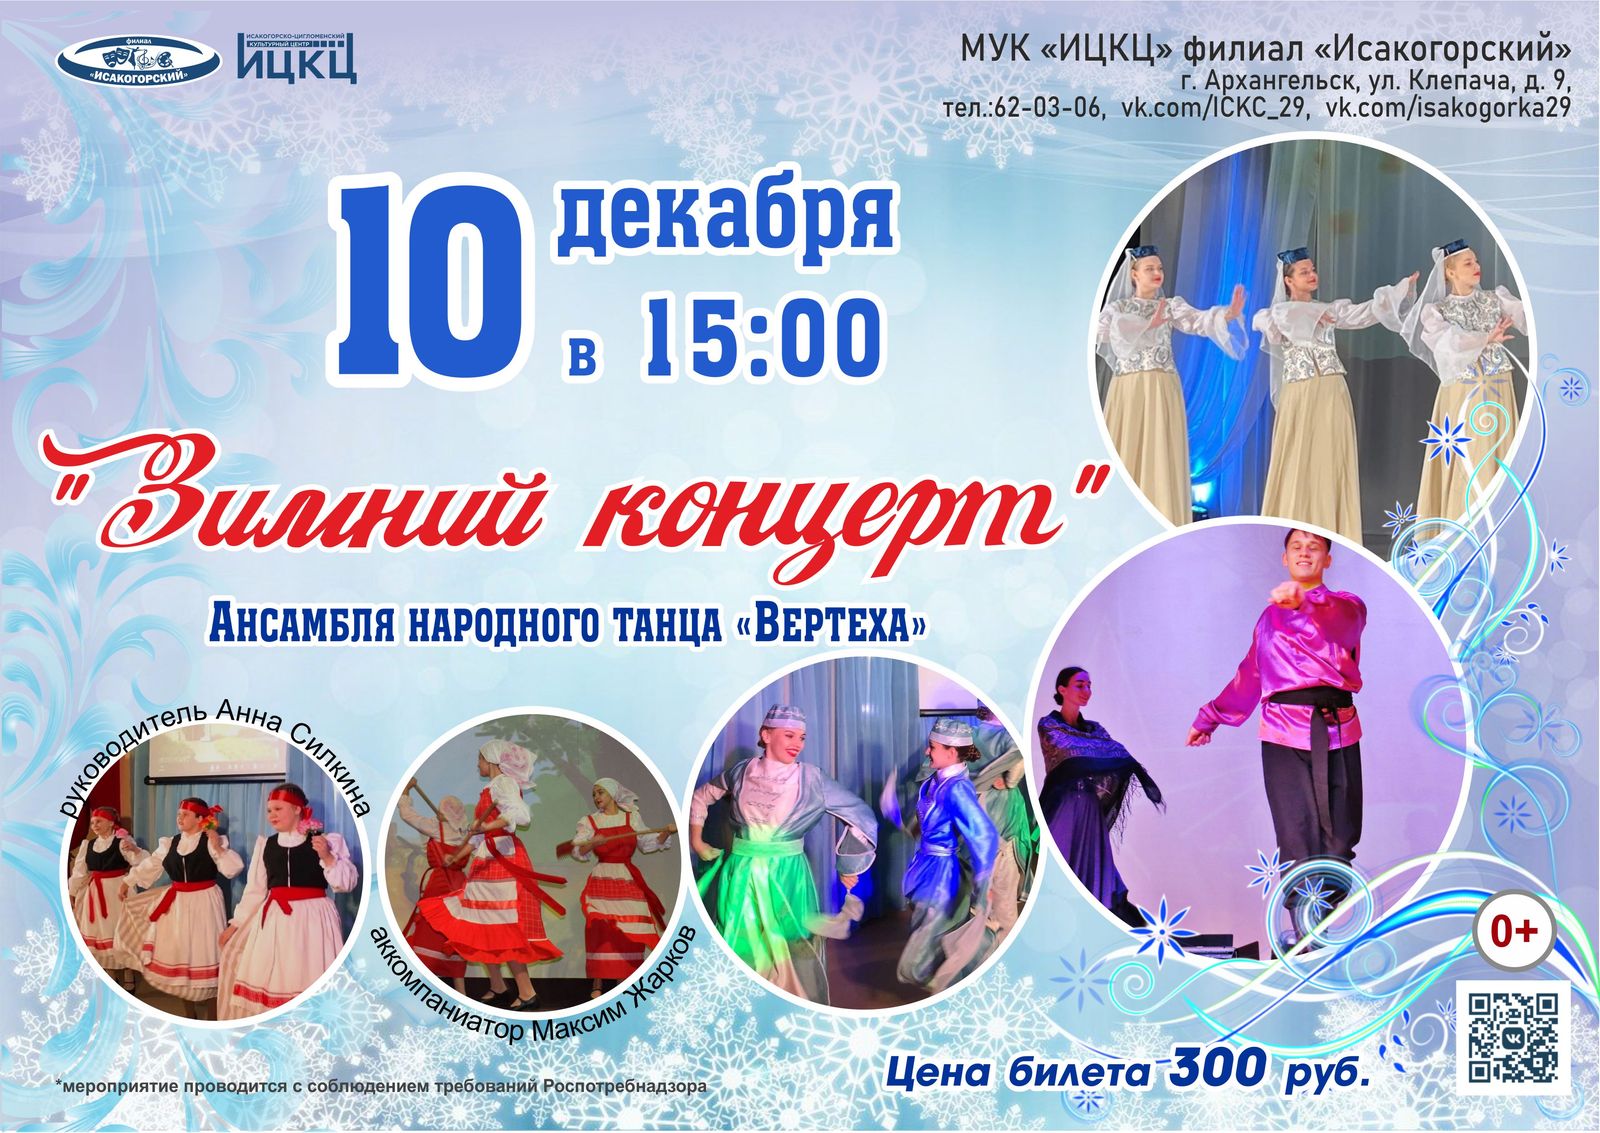 «Зимний концерт» ансамбля народного танца «Вертеха»